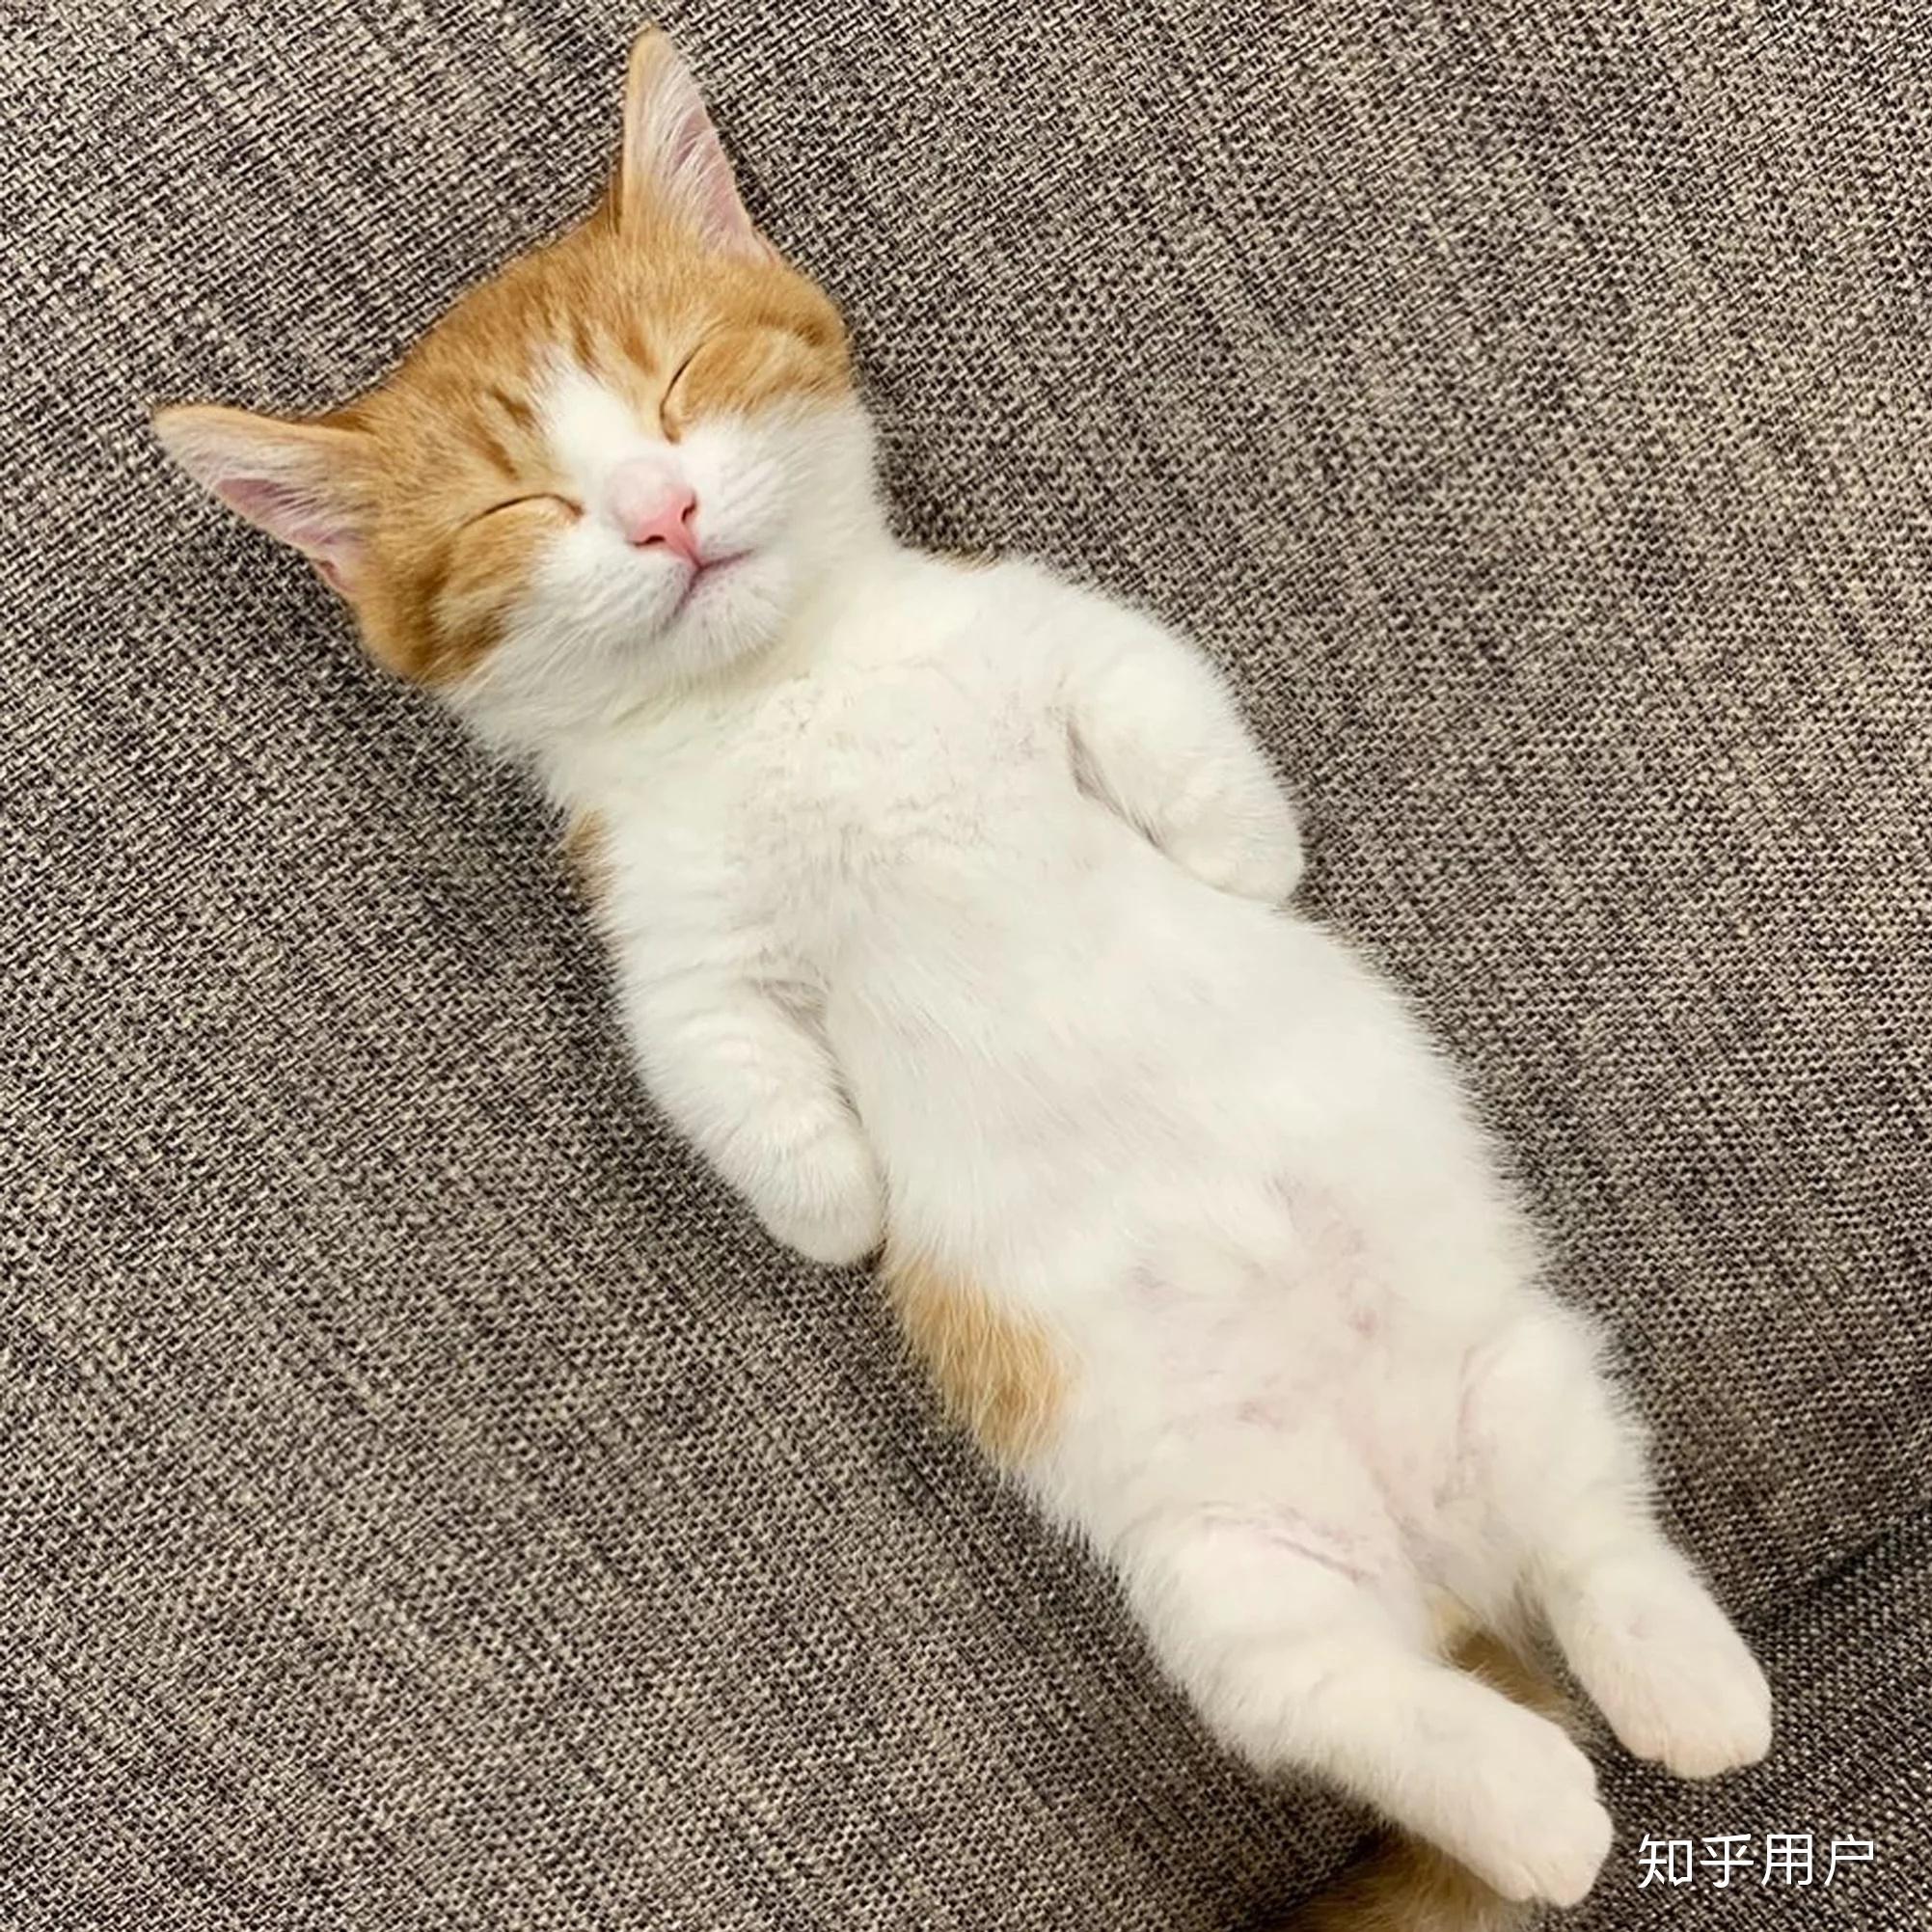 日本一小奶猫成精，睡姿萌化网友 | 宠物天空